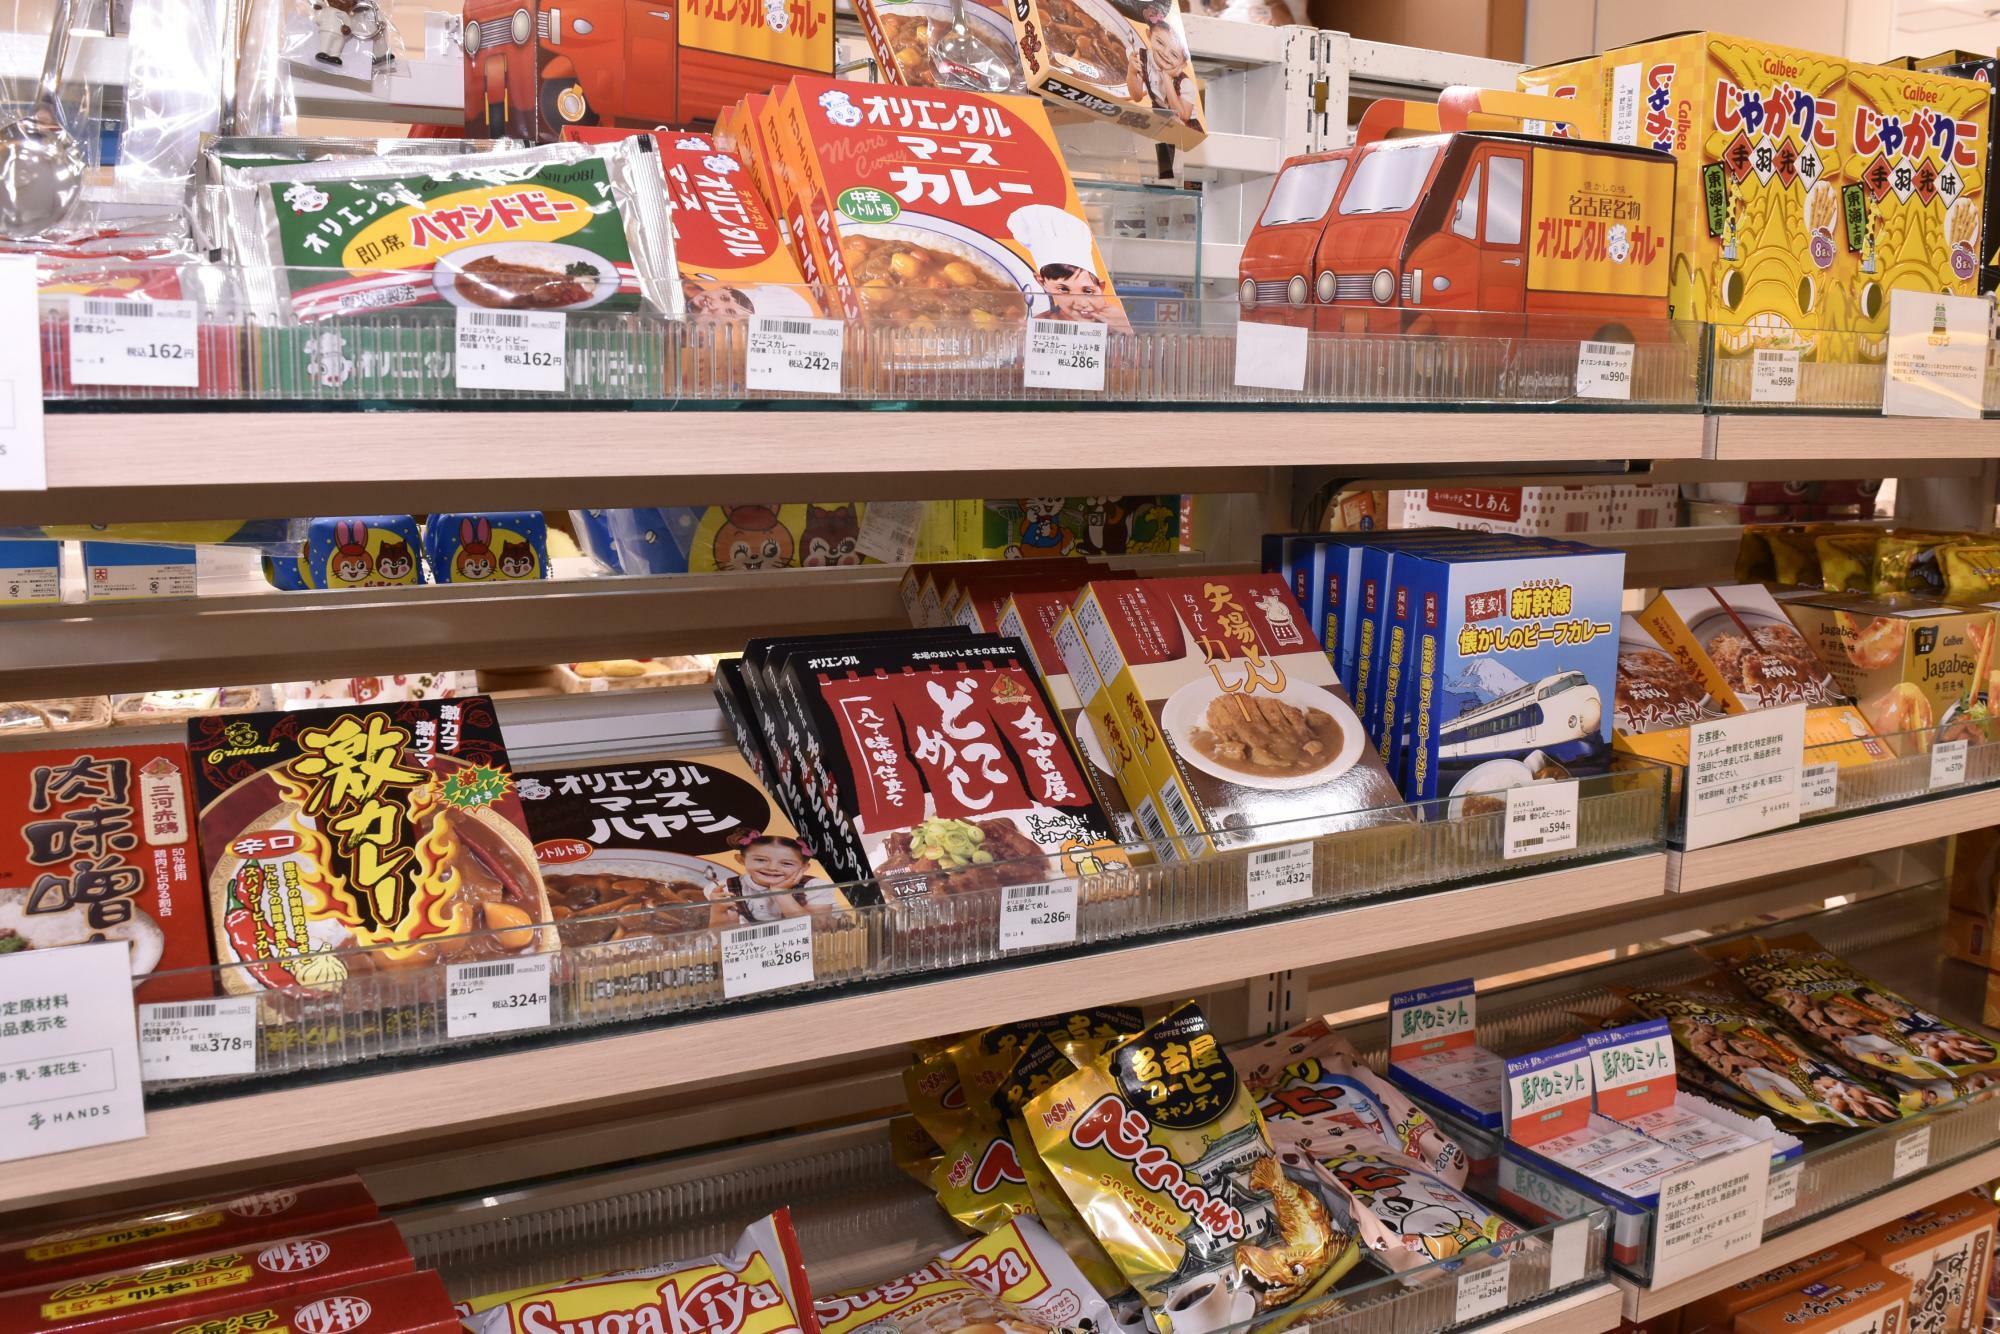 地元のメーカーや名古屋テイストのレトルト食品、スナック、調味料など食品類も多数